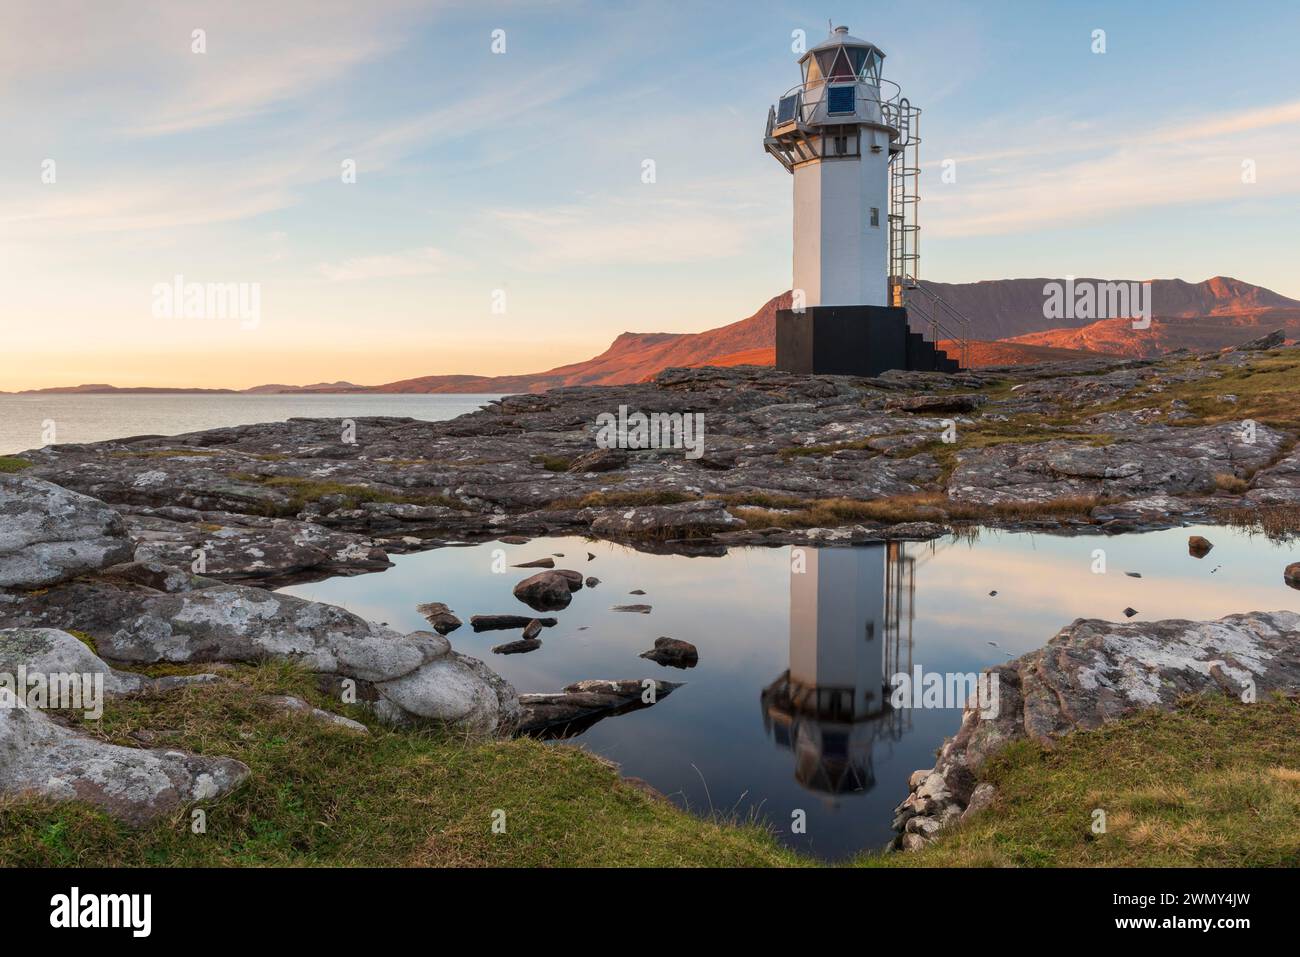 United Kingdom, Scotland, Highlands, North Coast 500 Route, Ullapool, Rhue lighthouse Stock Photo